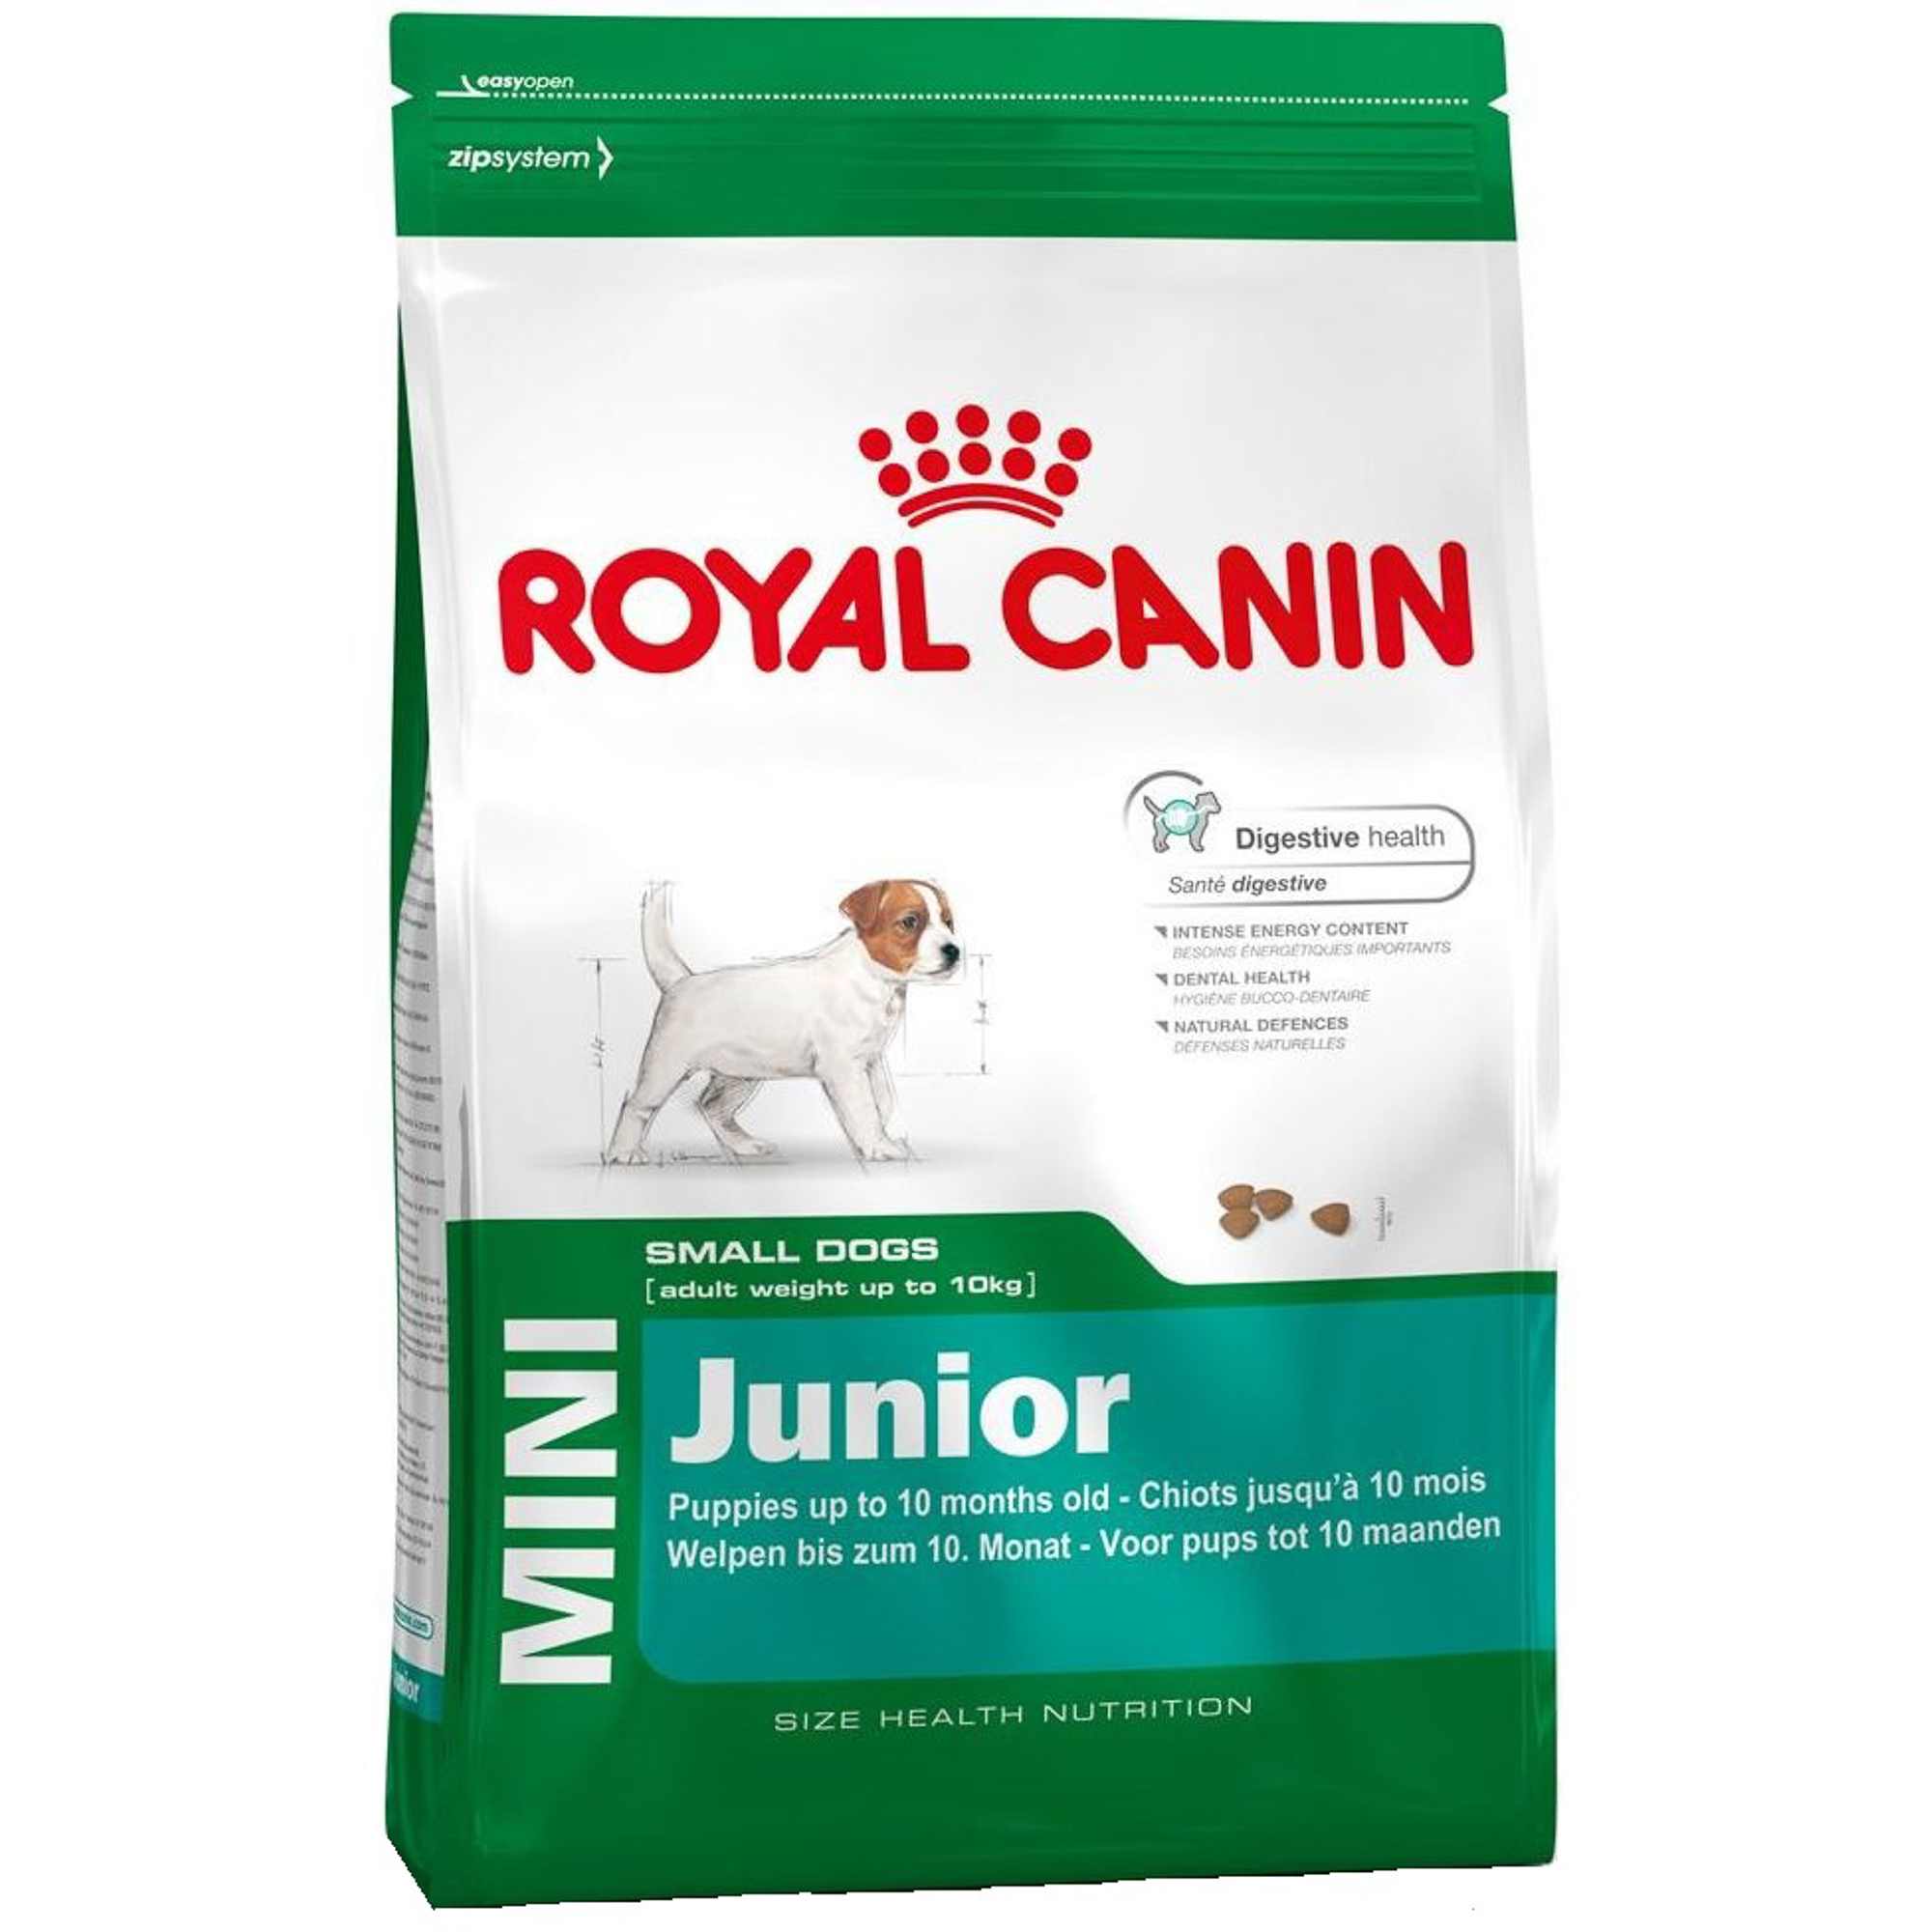 Корм для щенков Royal Canin JUNIOR для мелких пород, с 2 до 10 месяцев, 2 кг корм для собак royal canin size mini adult для мелких пород с 10 месяцев до 8 лет птица 2 кг